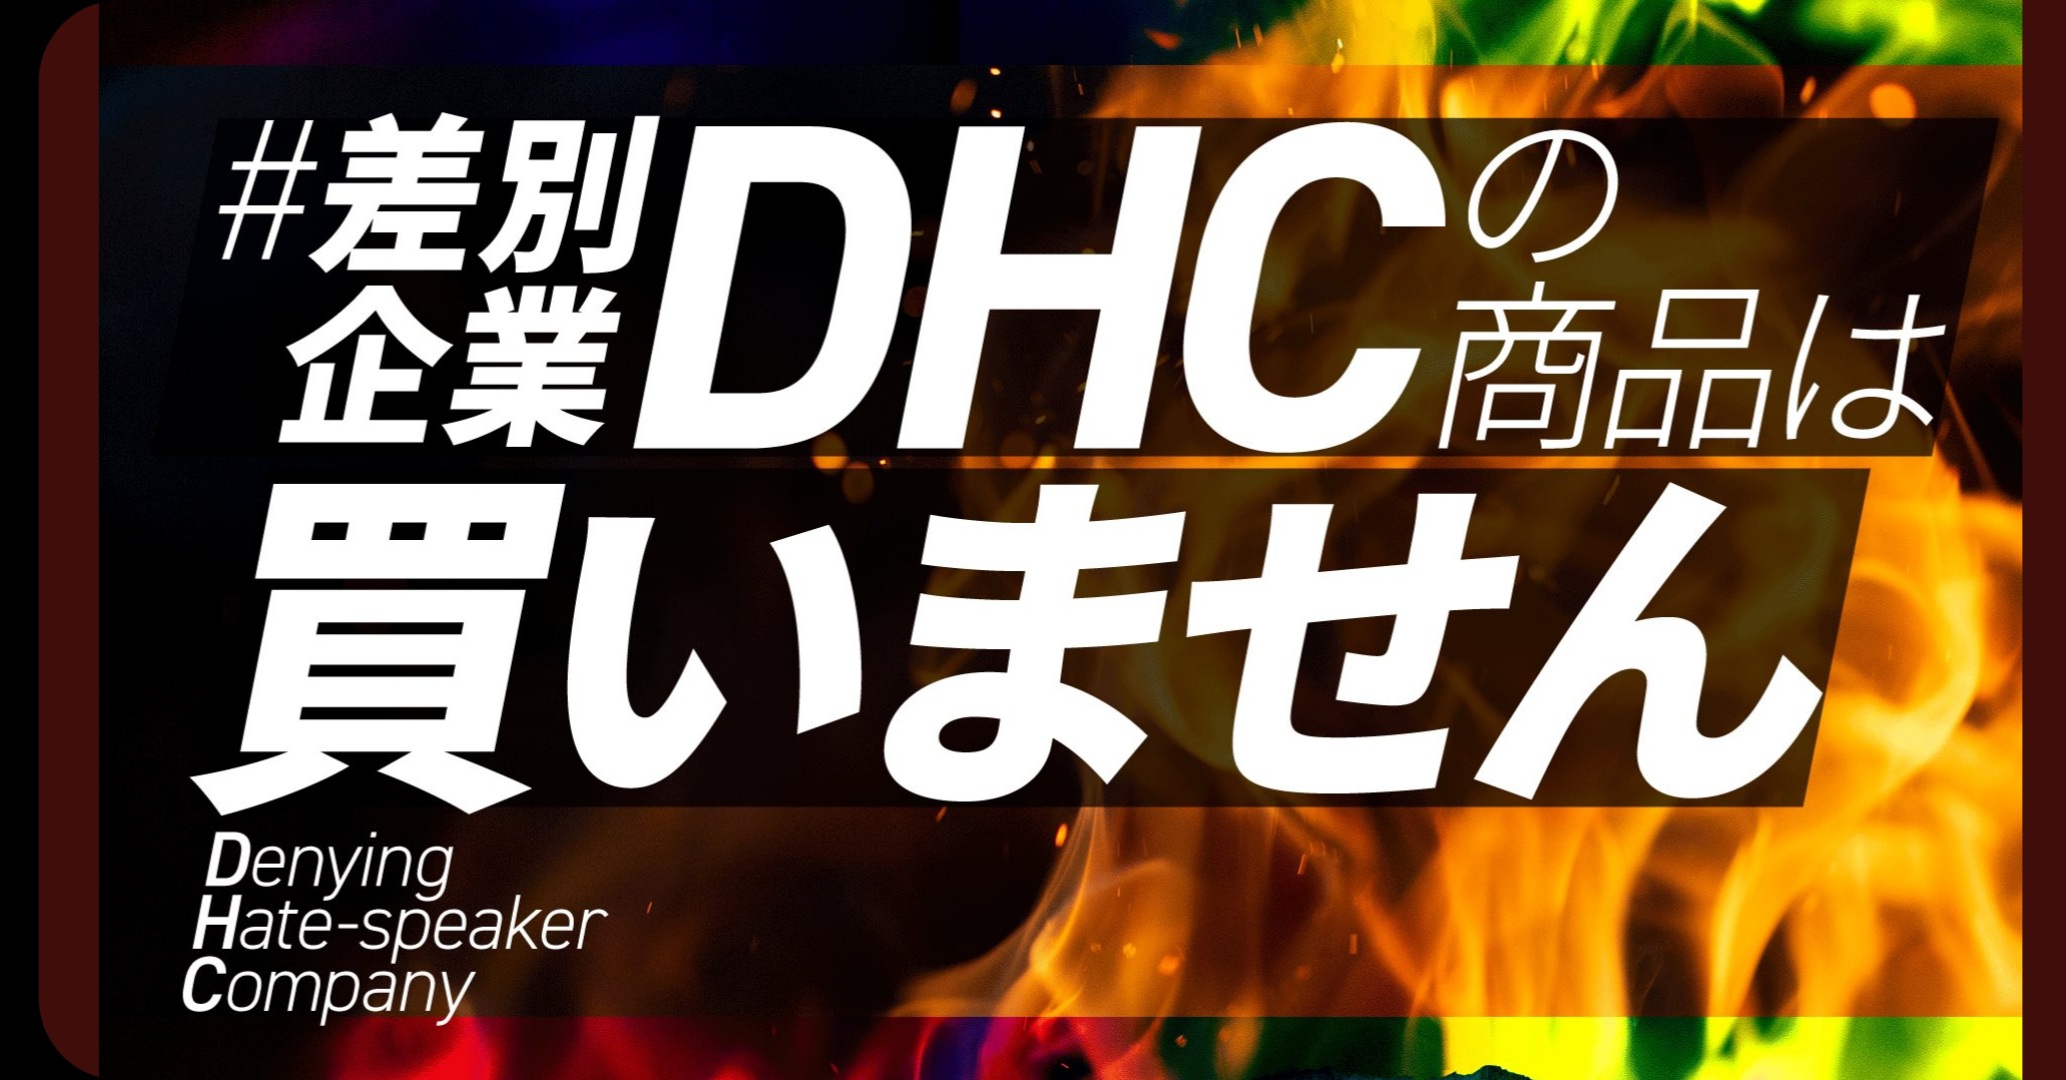 일본 DHC에 대한 비난과 불매를 촉구하는 ‘#차별 기업, DHC의 상품은 사지 않습니다’ 해시태그의 트위터 게시물